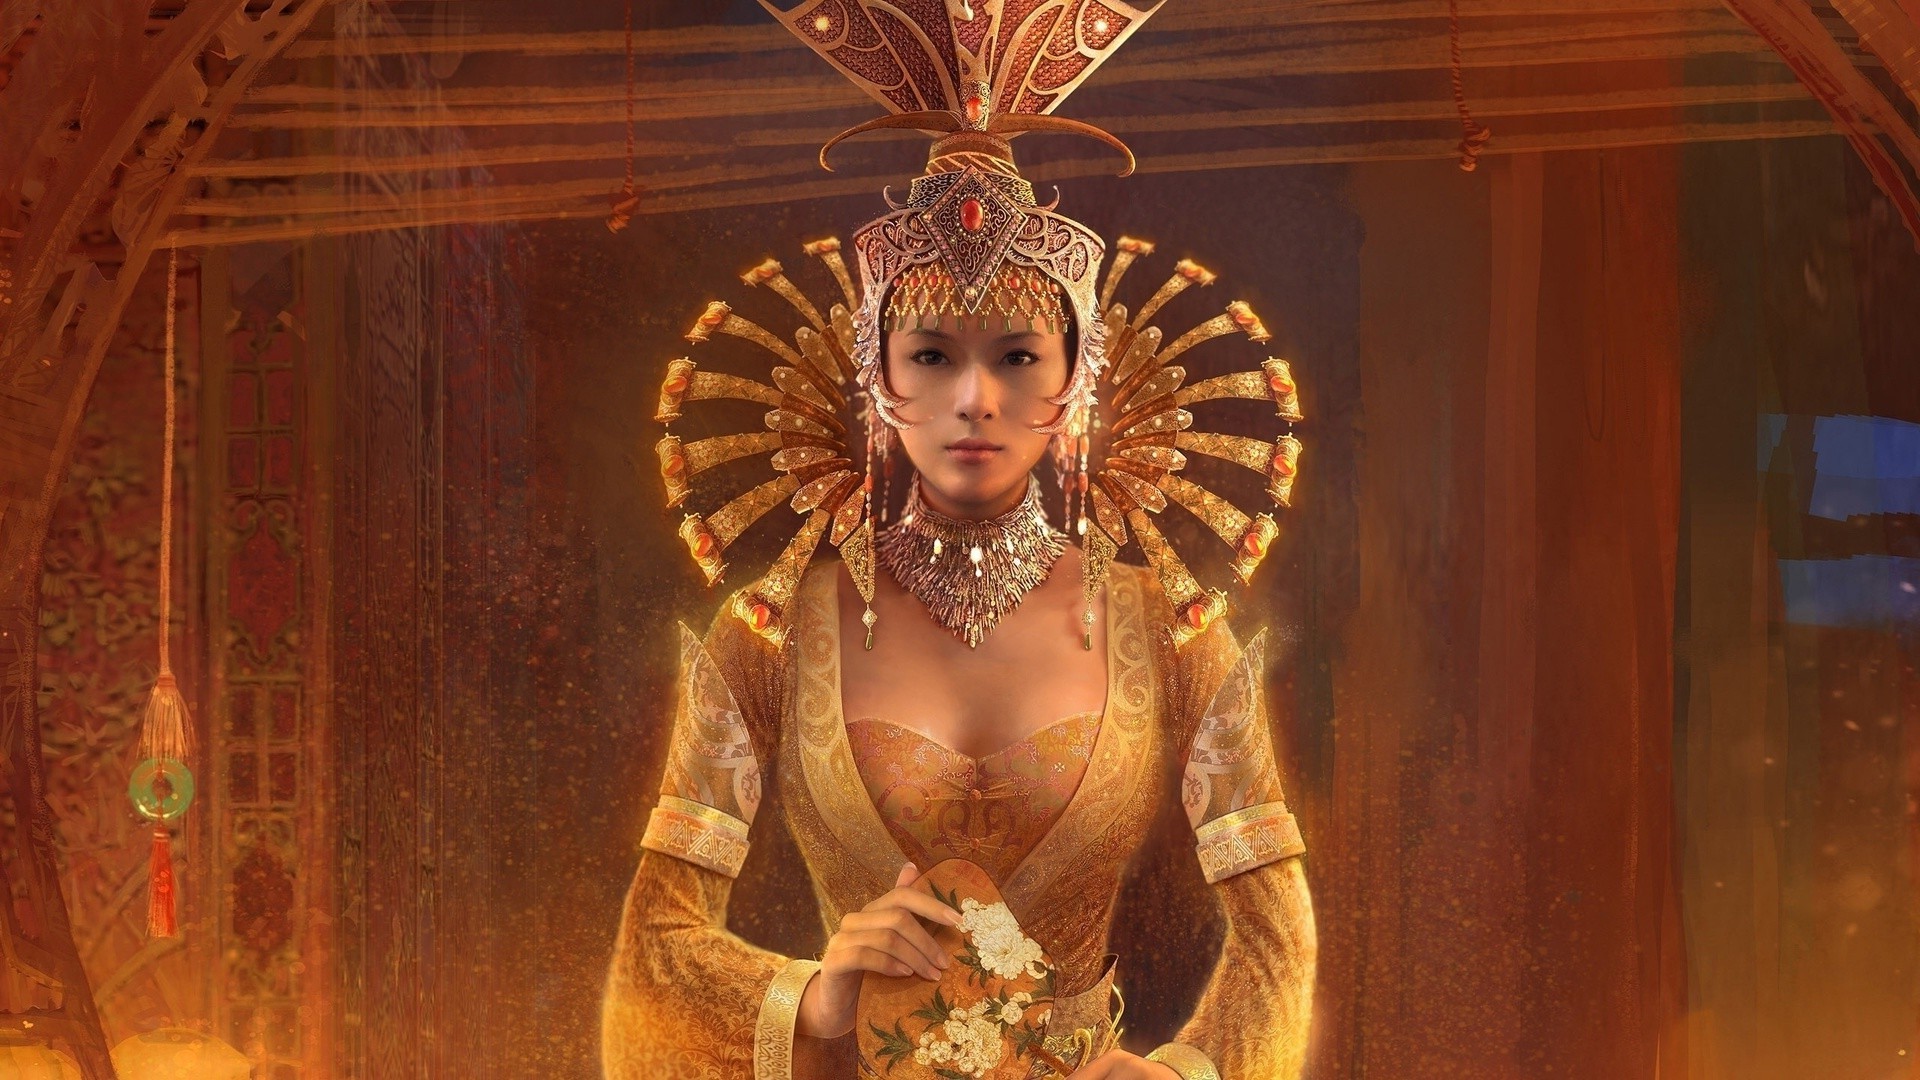 люди один взрослый религия носить вуаль портрет женщина скульптура ювелирные изделия искусство традиционные украшения золото музыка